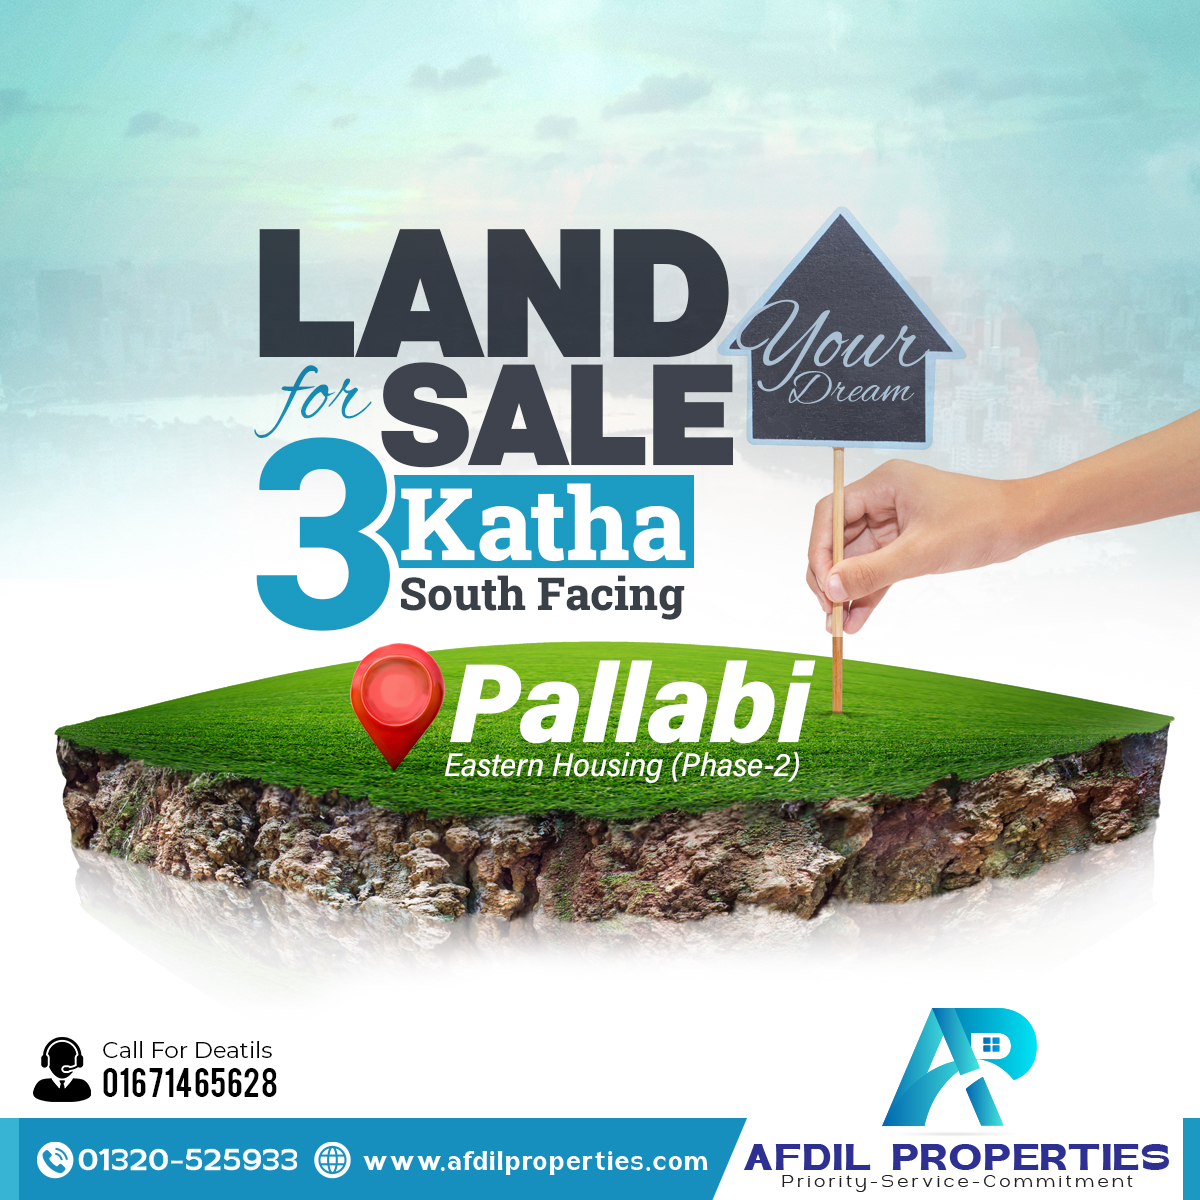 South Facing 3 Katha Land Sale at Pallabi